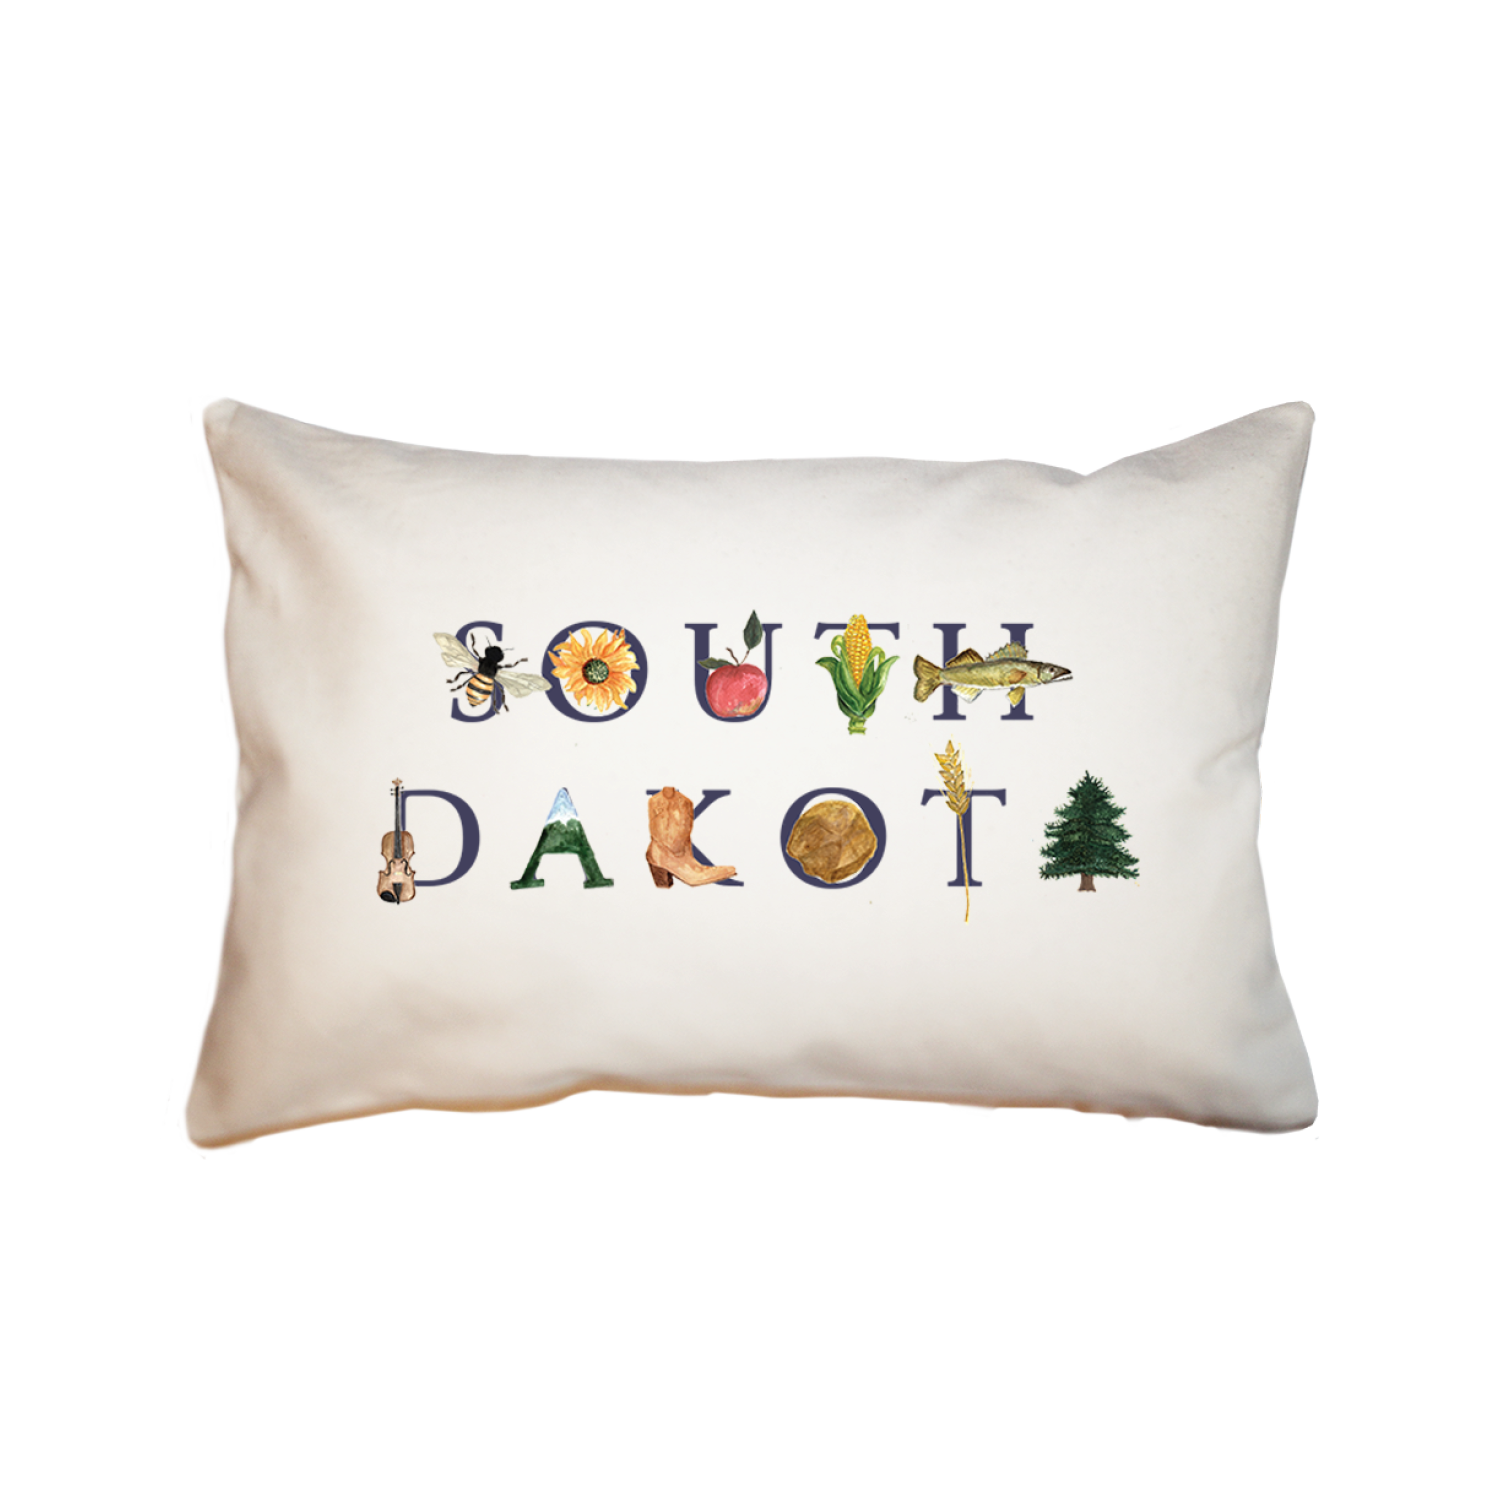 South Dakota large rectangle pillow